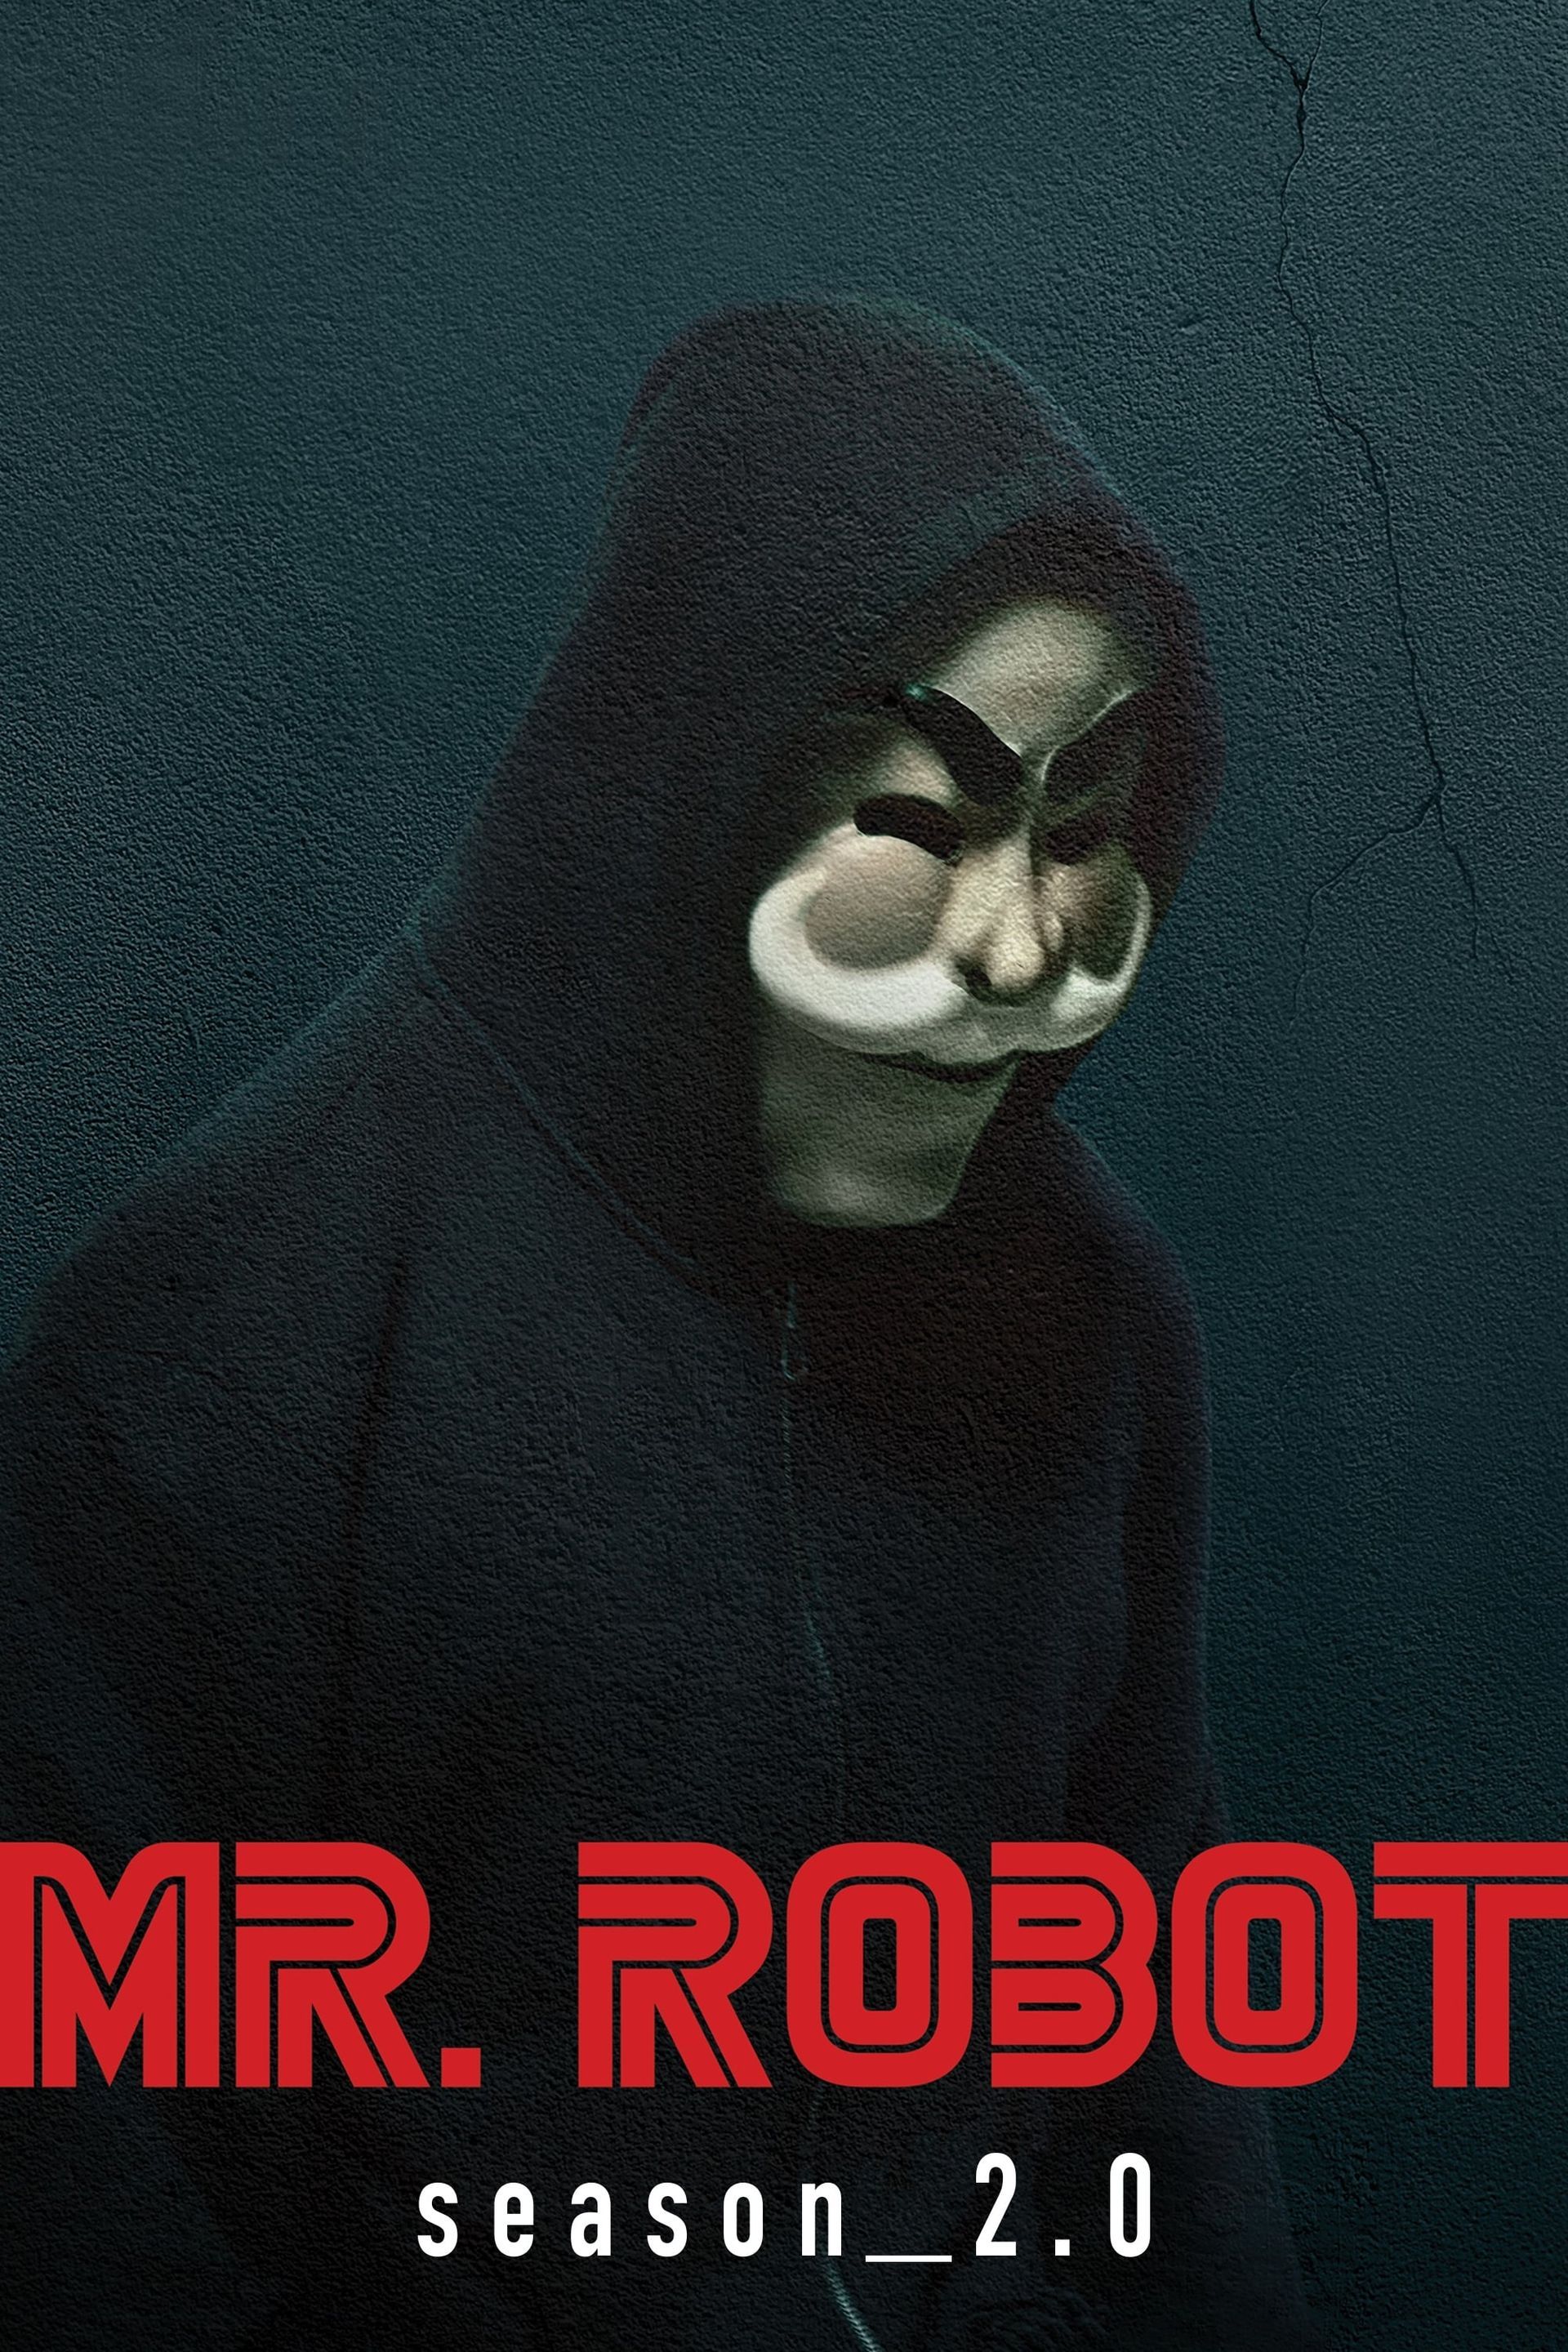 Mr Robot Bar Poster, Tv Show Mr Robot, Hacker Mr Robot